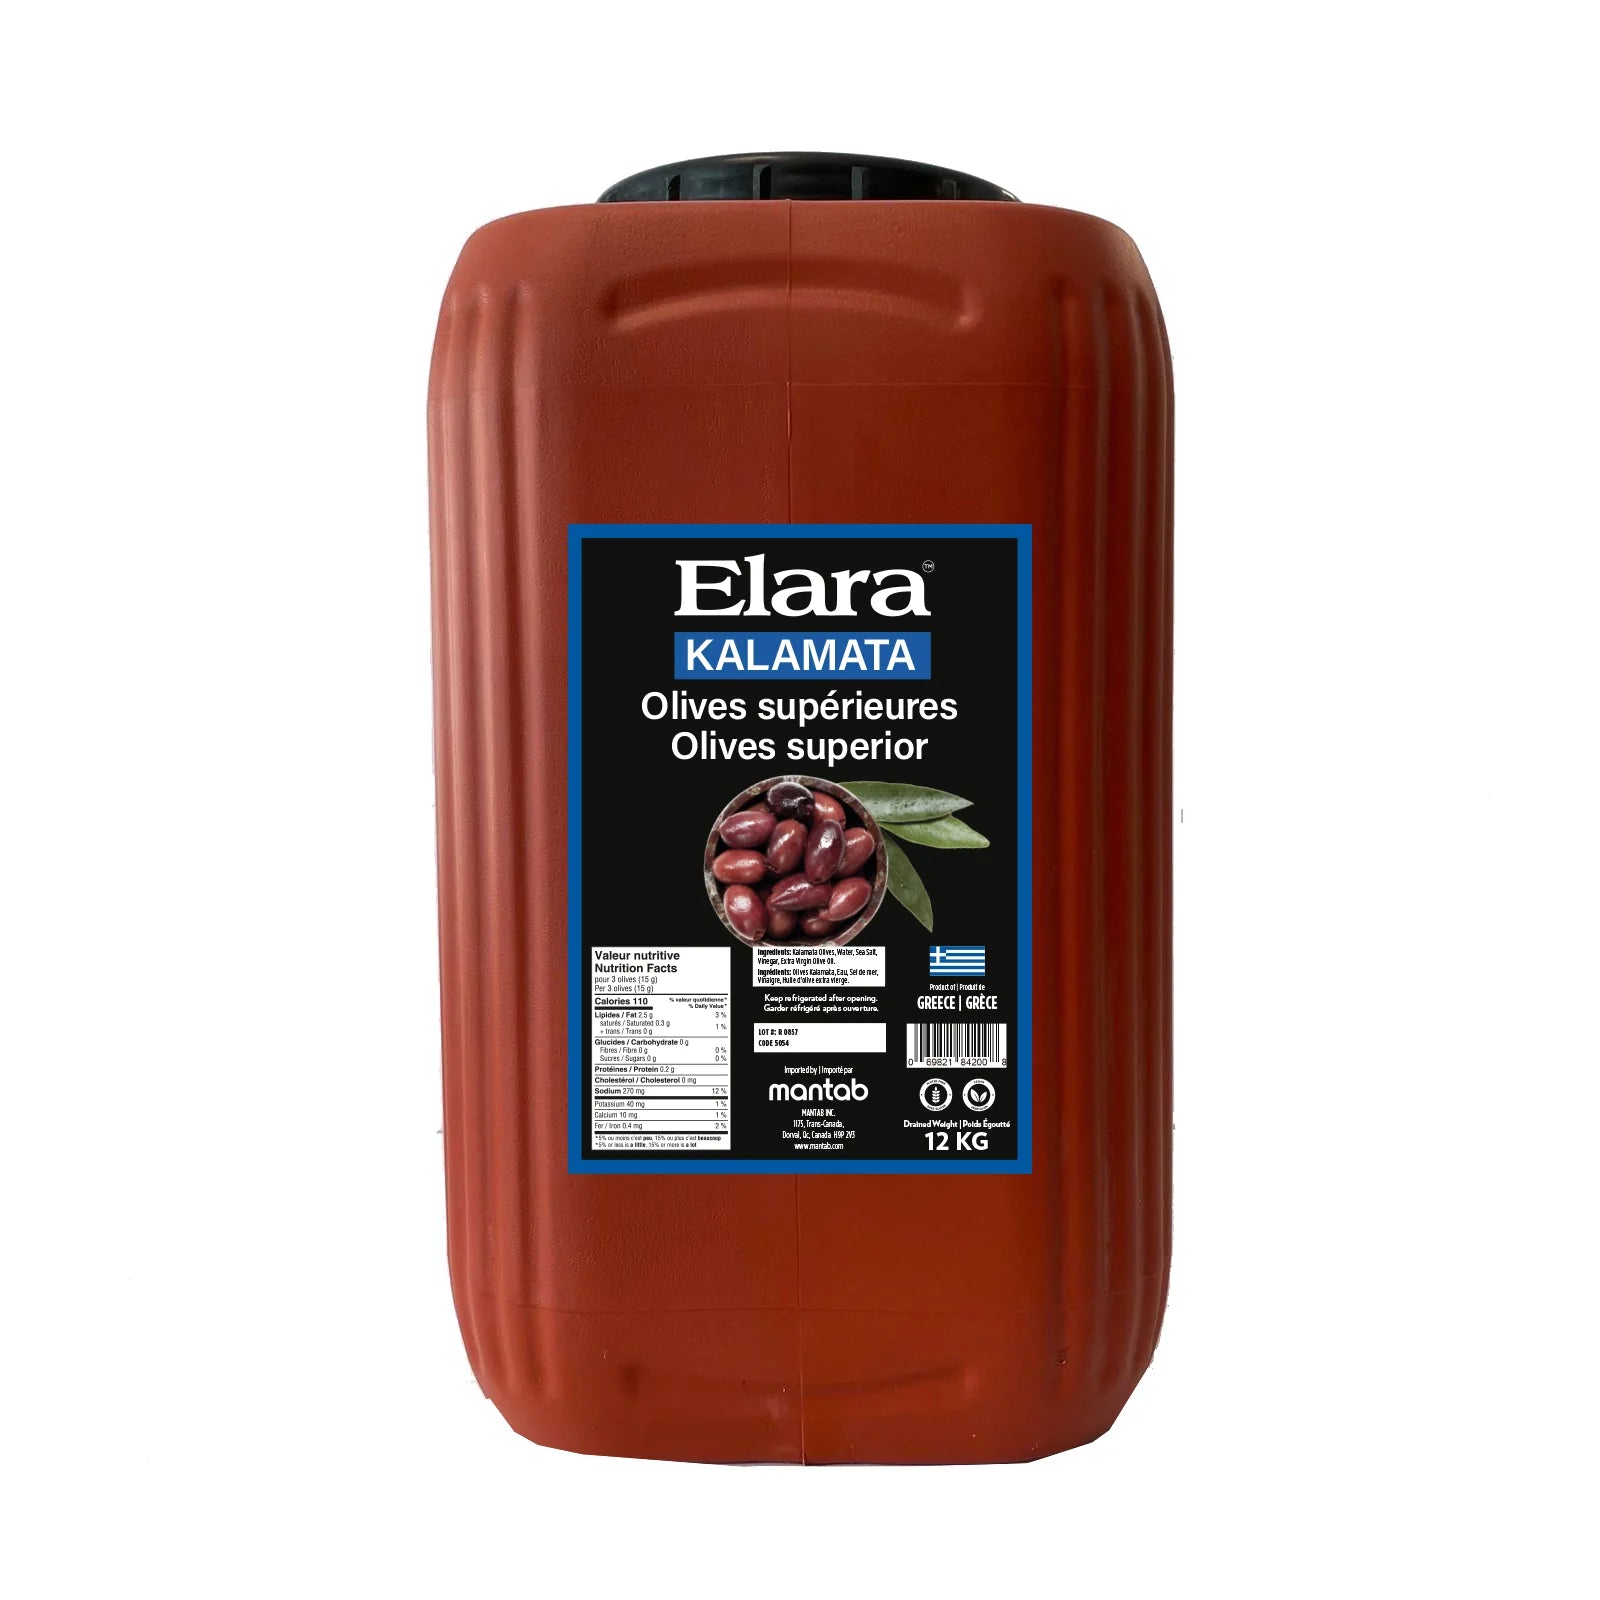 Elara - Olives - Kalamata - Superior Whole